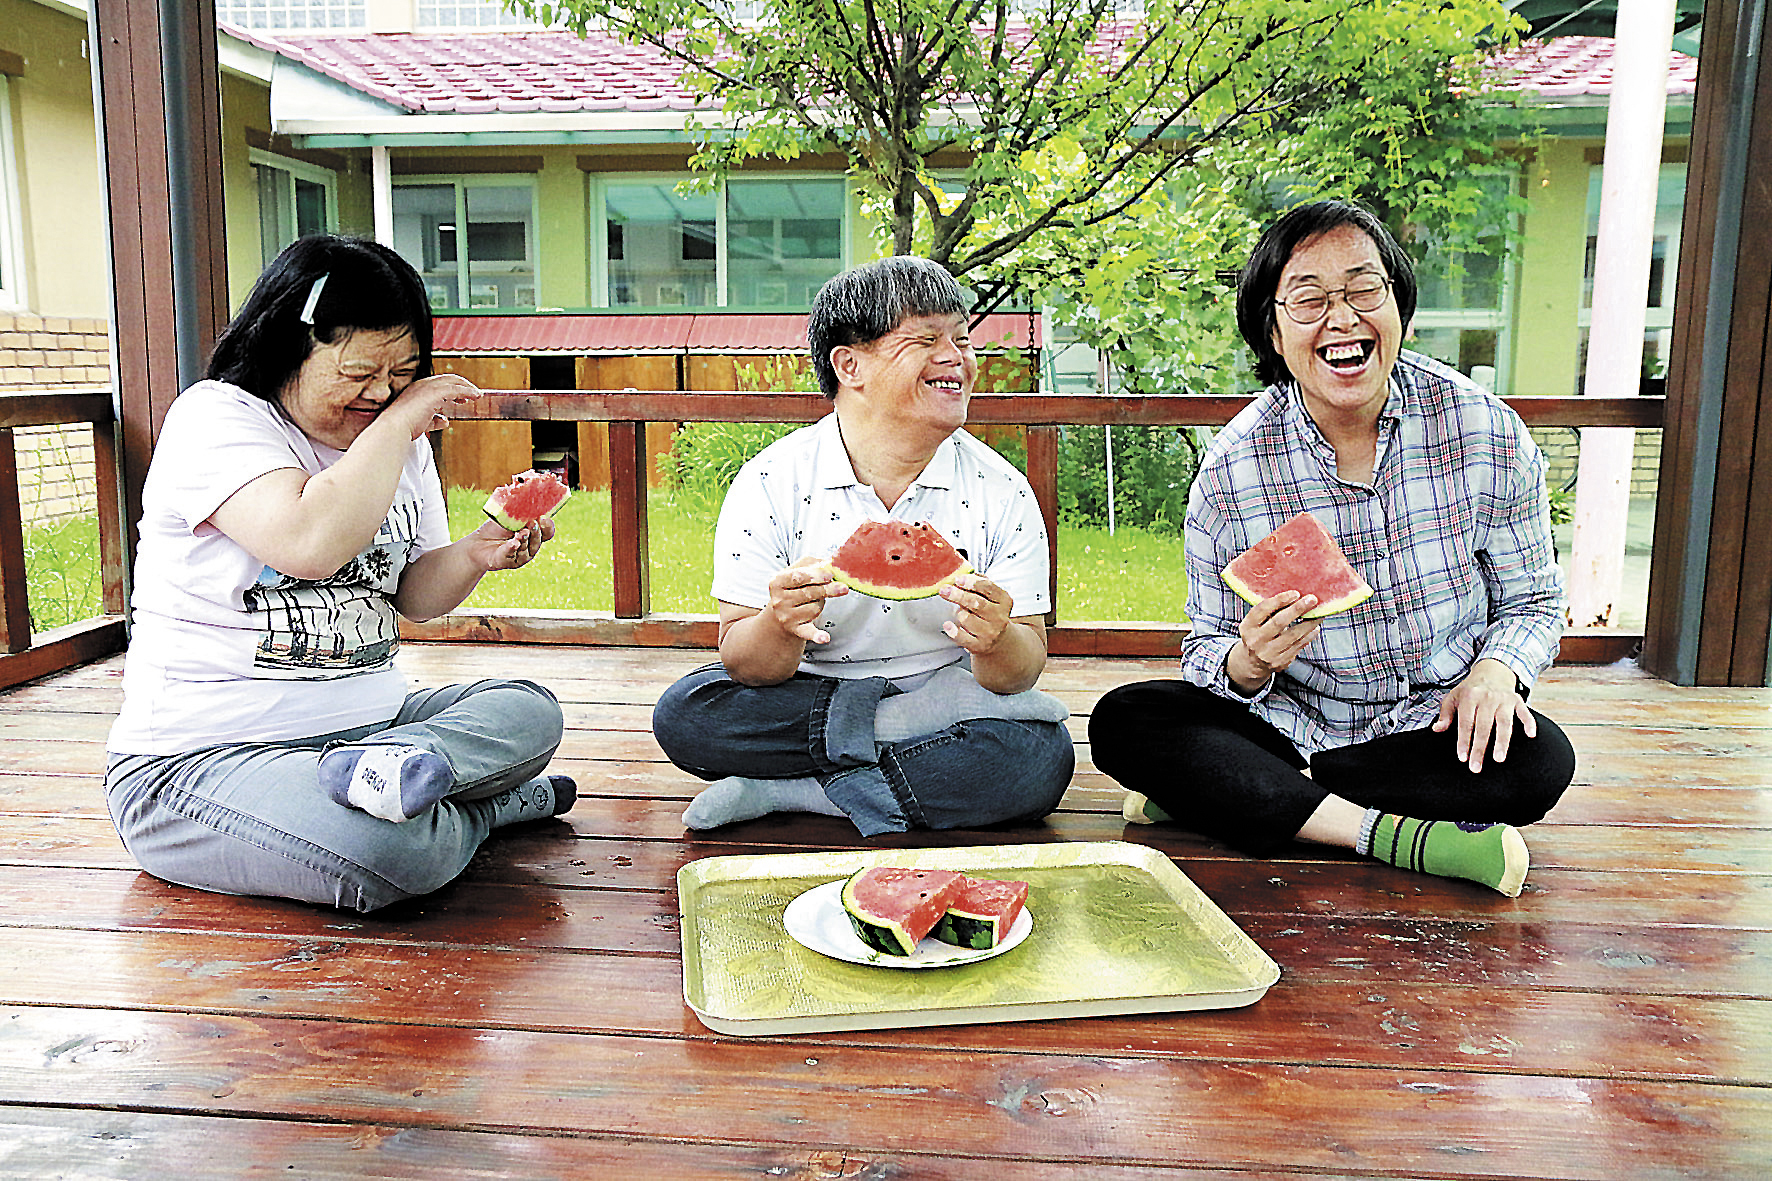 그늘막 나무데크에 앉아서 쟁반에 놓인 수박을 함께 나눠 먹고있는 3명의 장애가족의 모습이다. 얼굴엔 웃음이 가득하다.